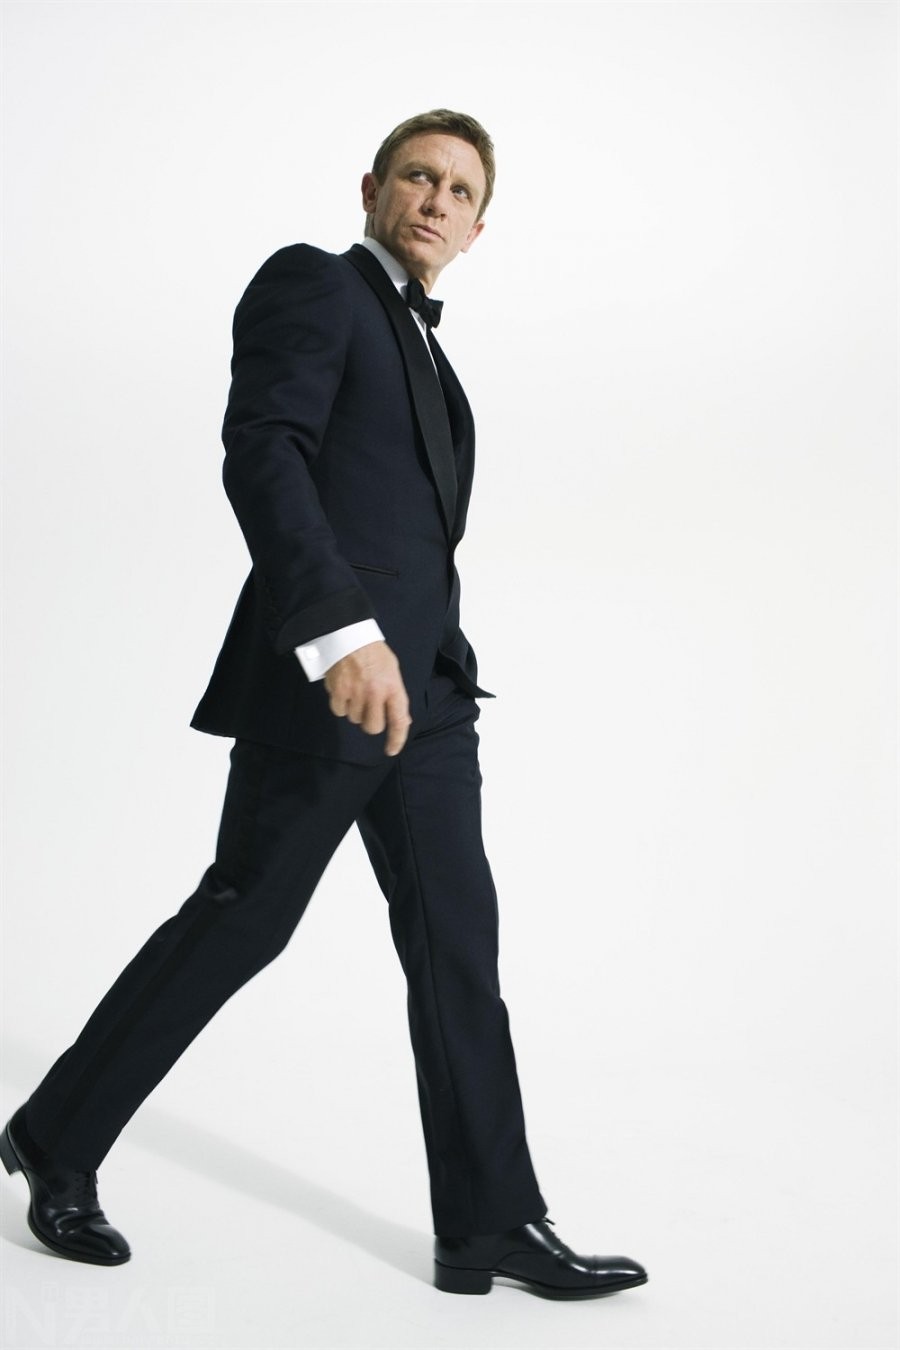 007主演52岁欧美帅哥丹尼尔克雷格黑色西装写真